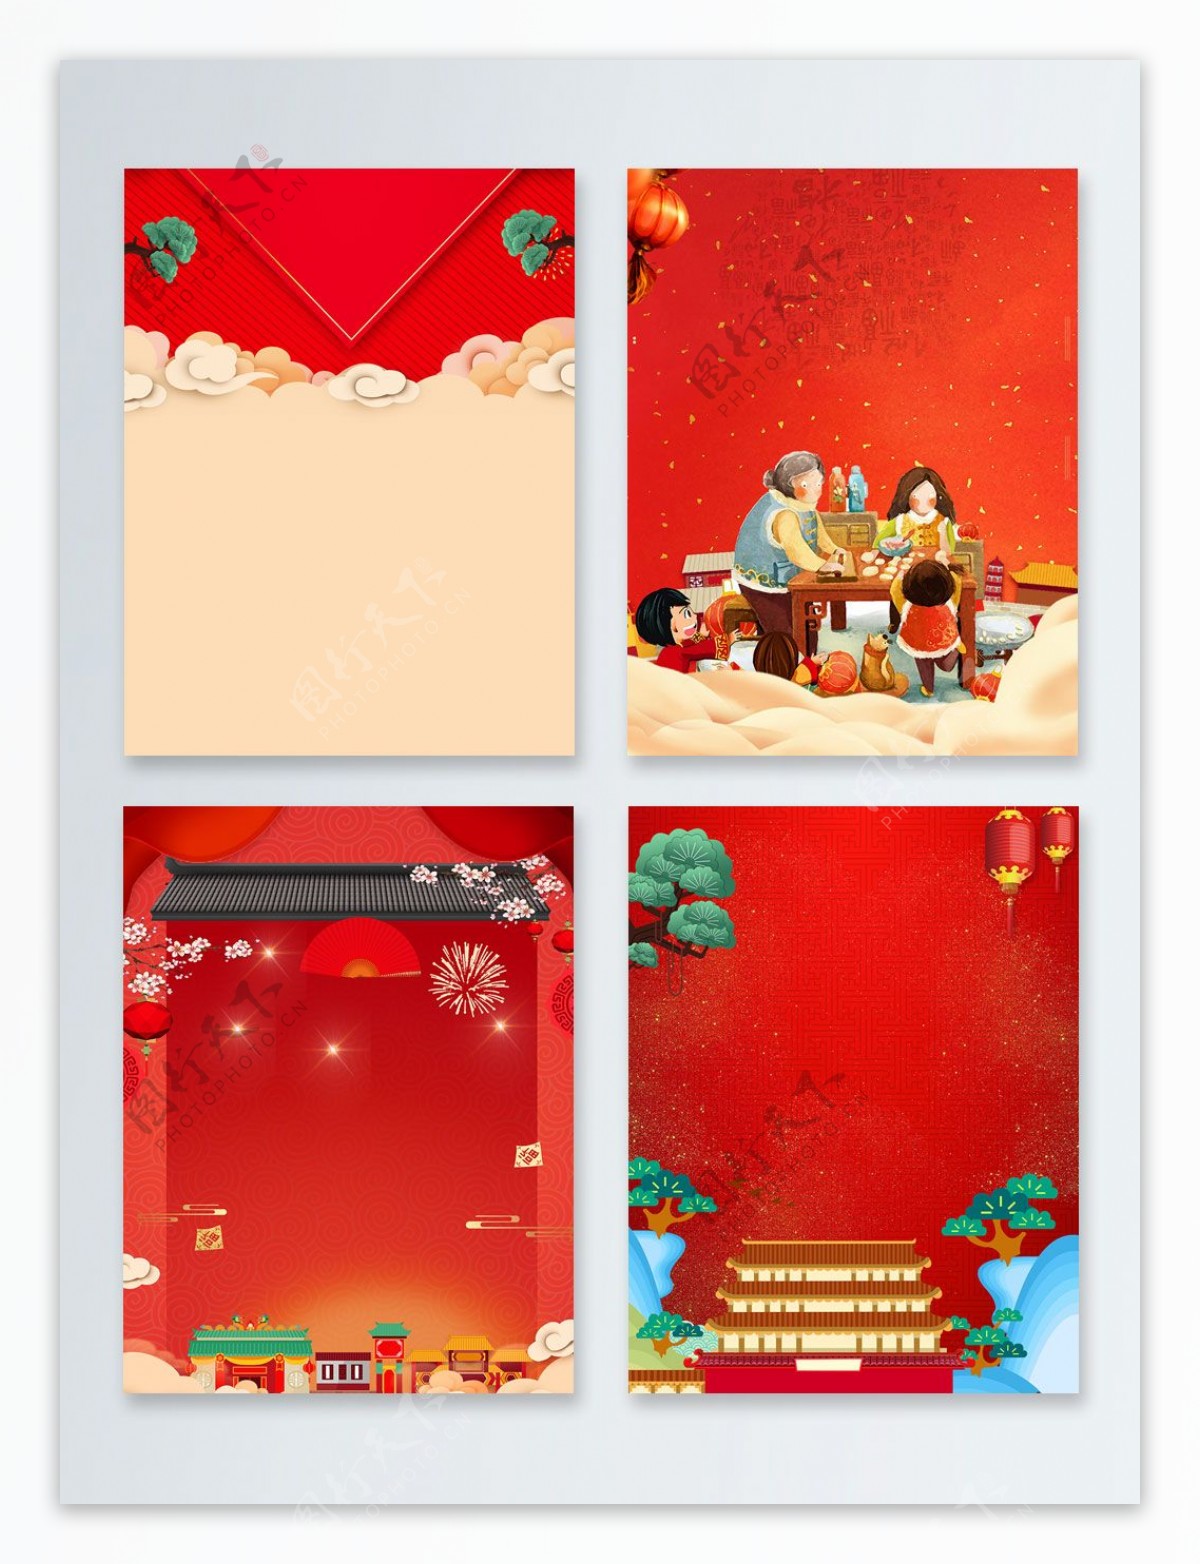 聚餐传统节日新年快乐广告背景图